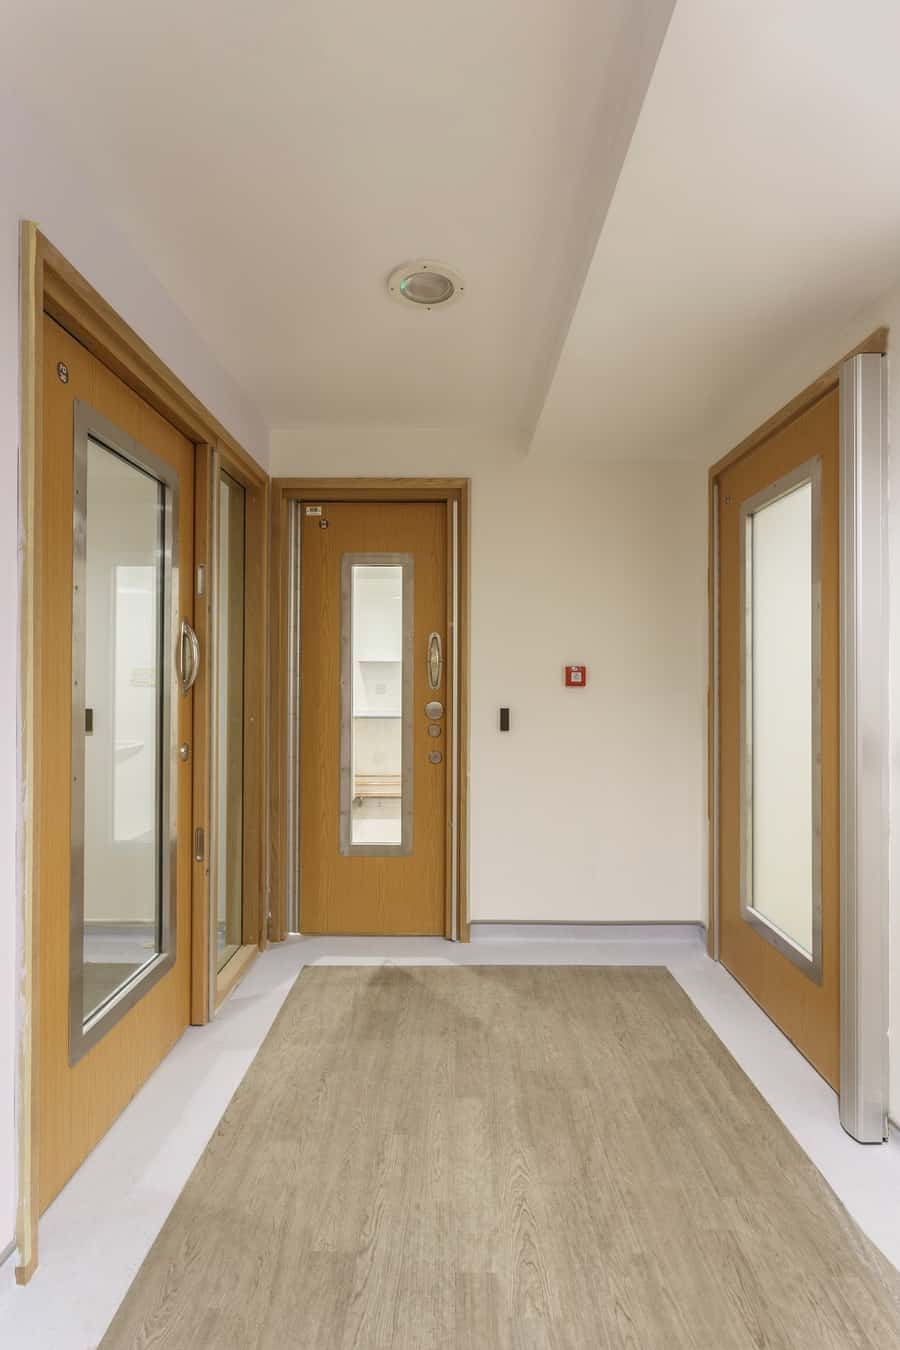  Doors in the refurbished hospital ward 